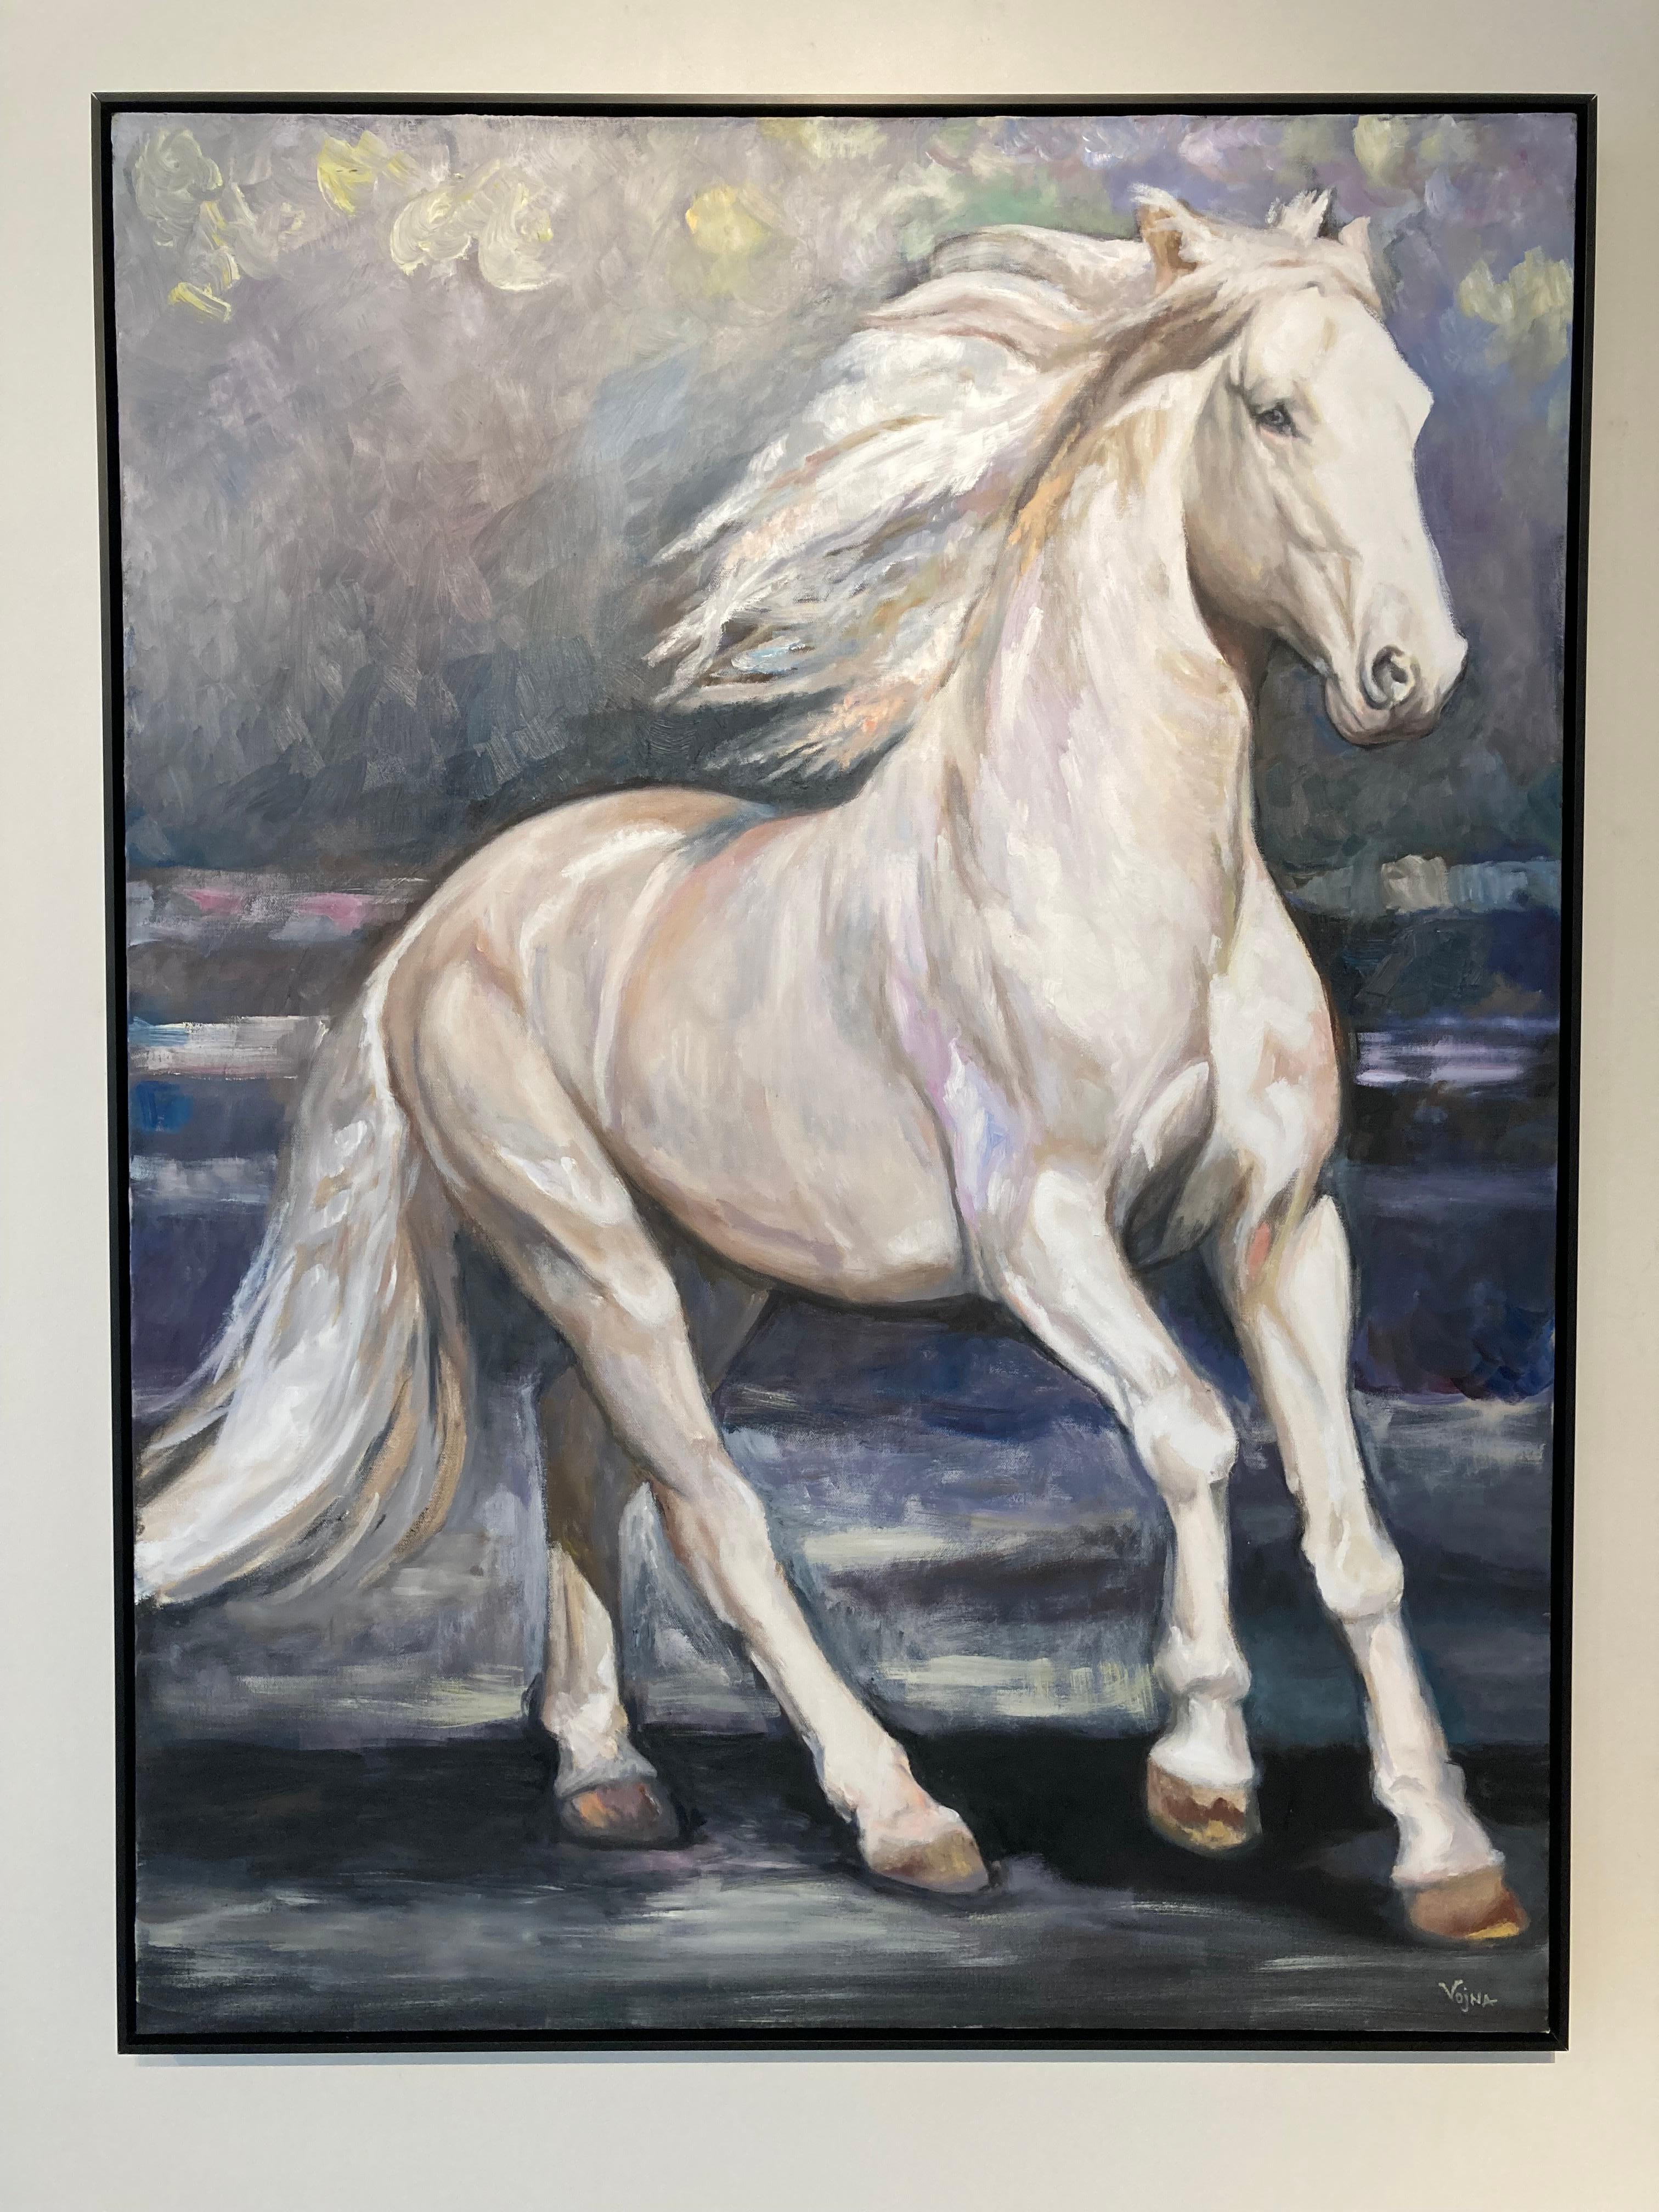 "Conquest", de Vojna Bastovanovic Casteel, est une peinture à l'huile sur toile encadrée, datant de 2021, qui représente un cheval en pleine course. Rendue dans des valeurs froides de bleu, violet, blanc, gris, la peinture présente également des